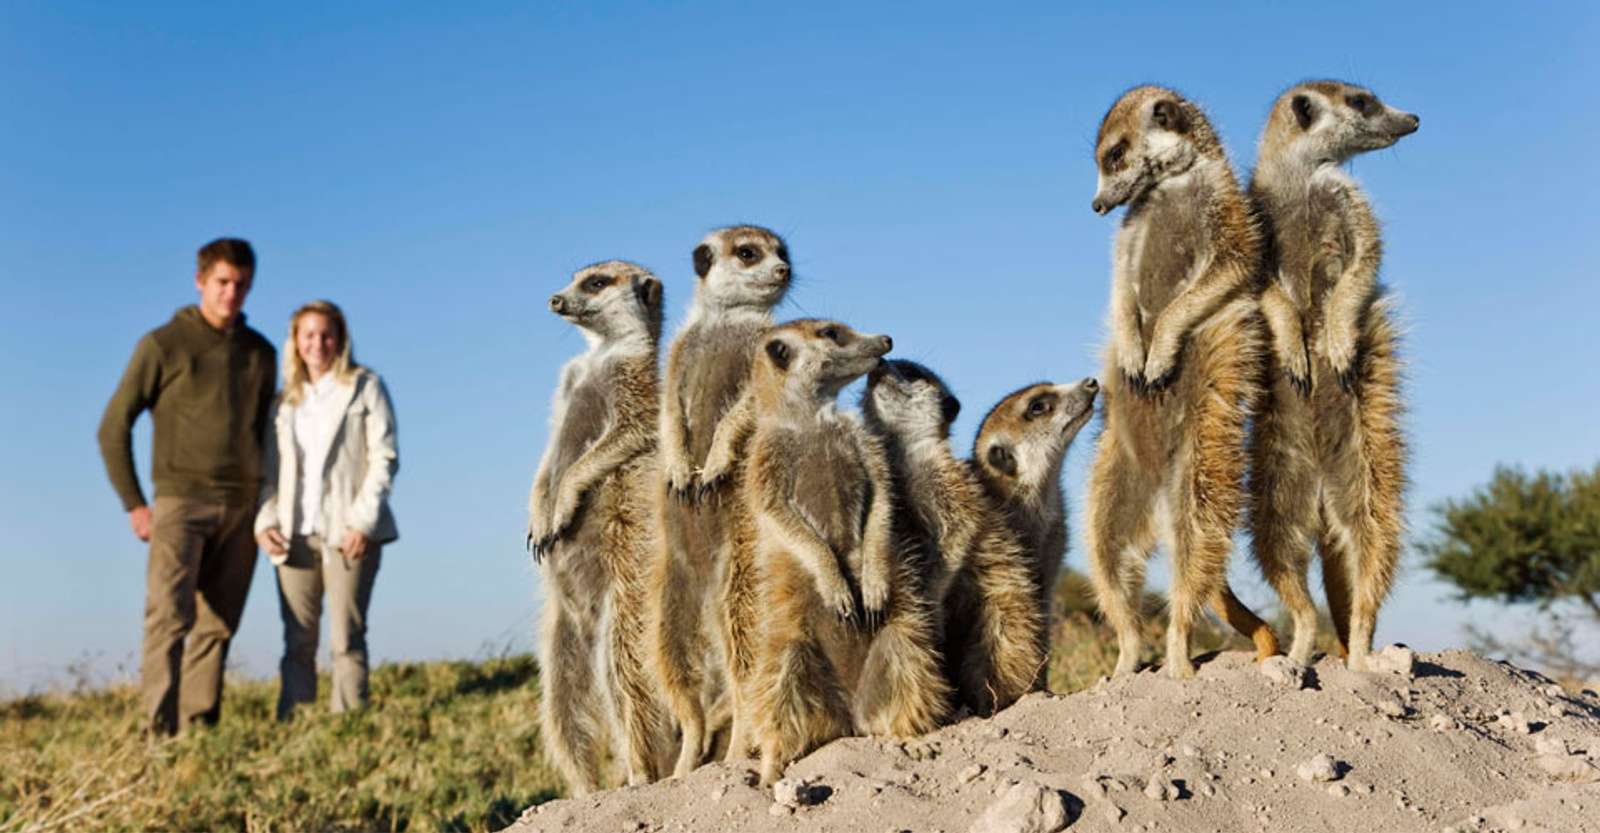 Meerkats and guests, Camp Kalahari, Makgadikgadi, Botswana.